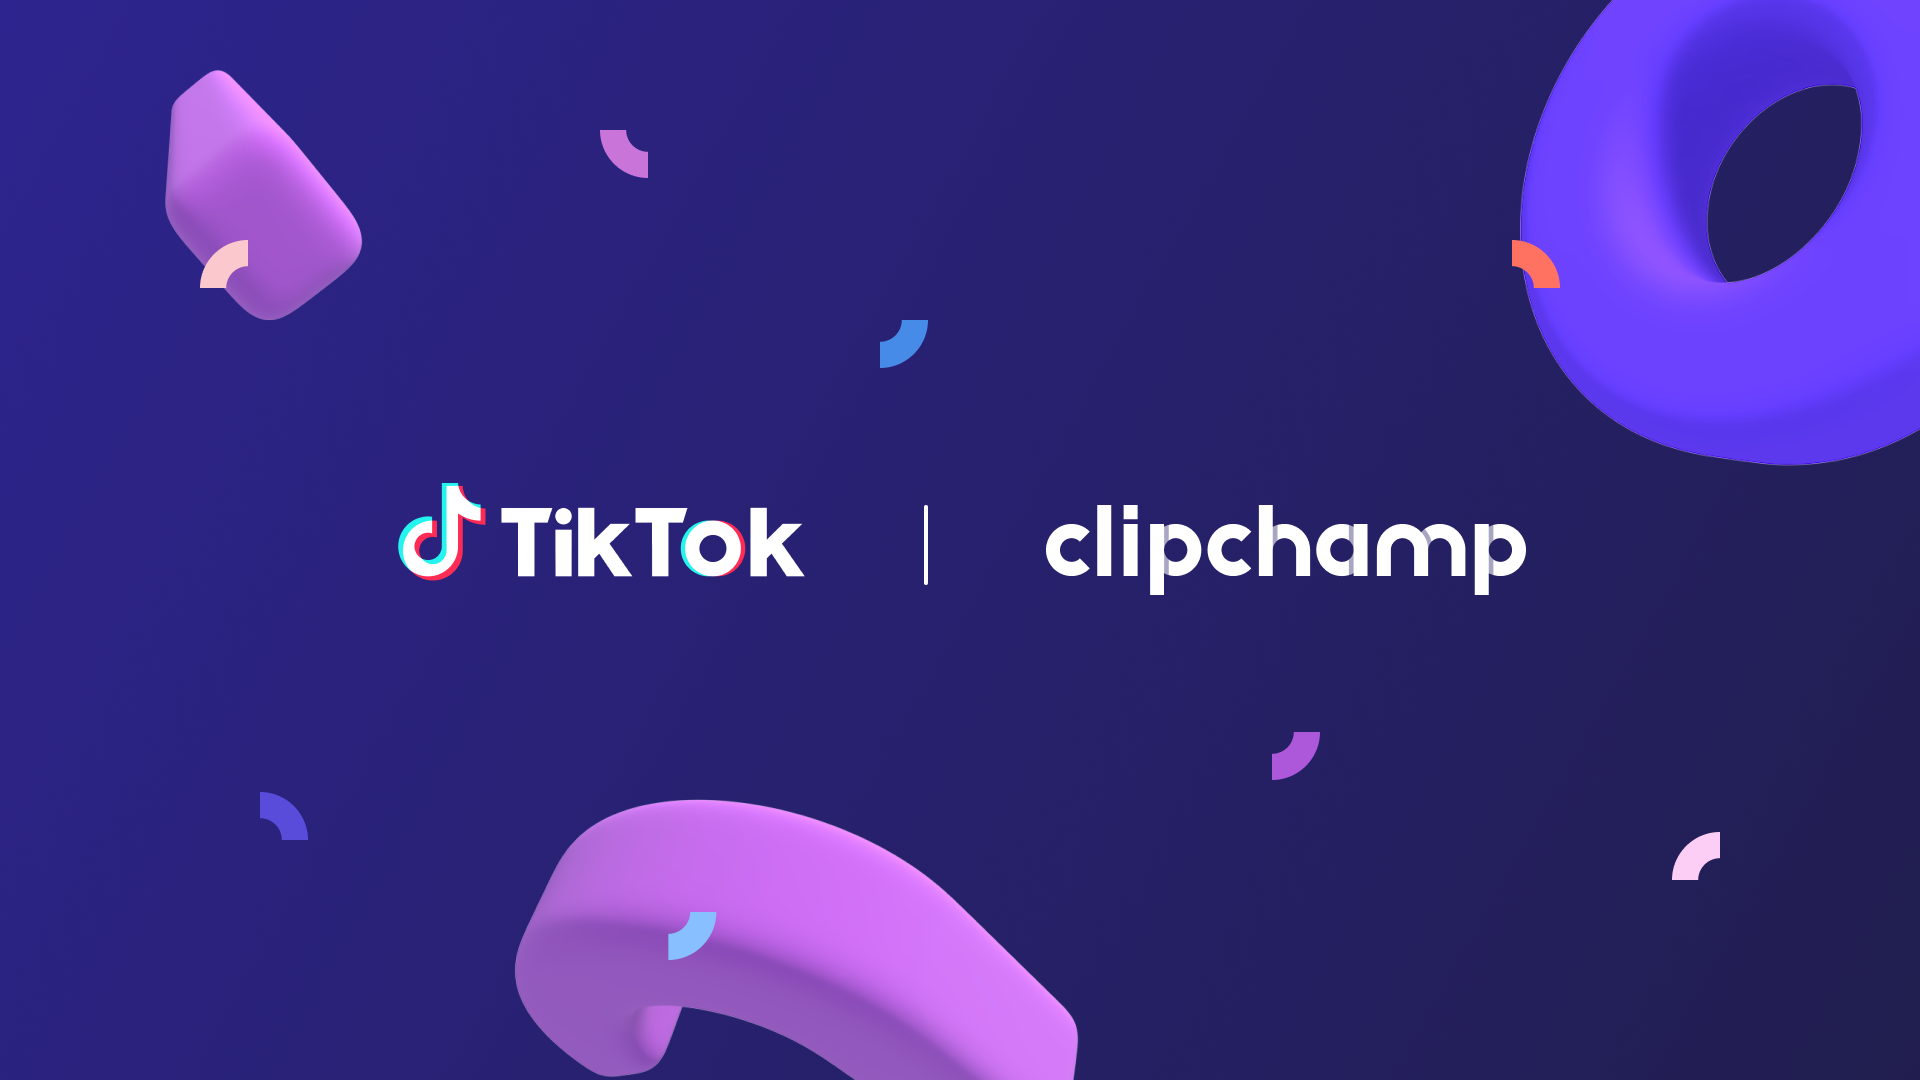 Logotipos de TikTok y Clipchamp.